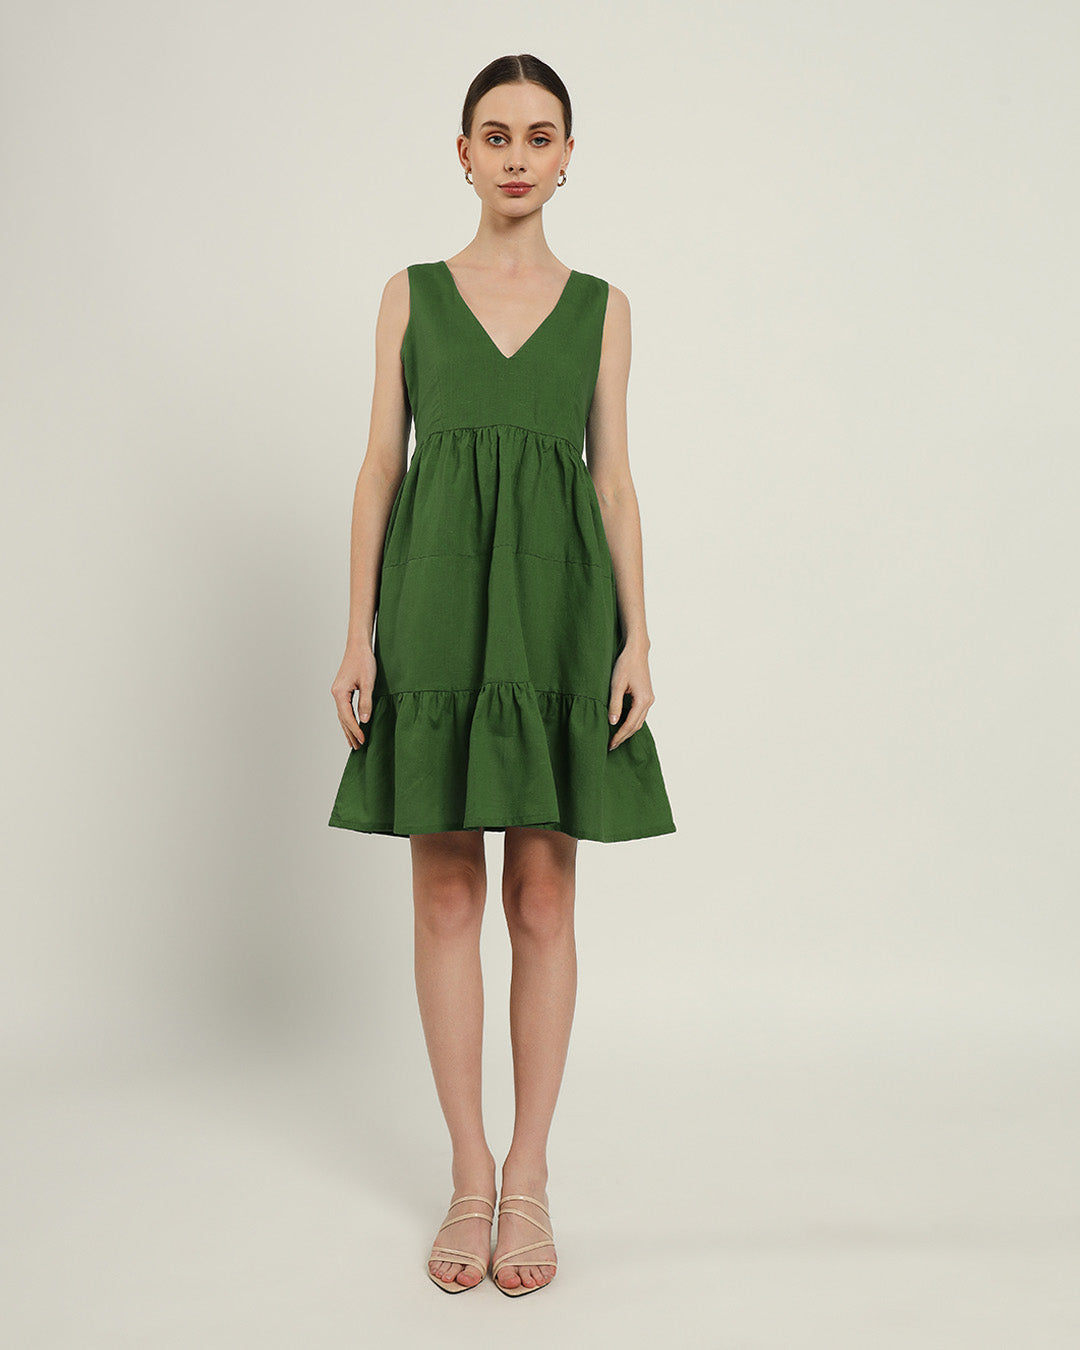 The Minsk Emerald Dress